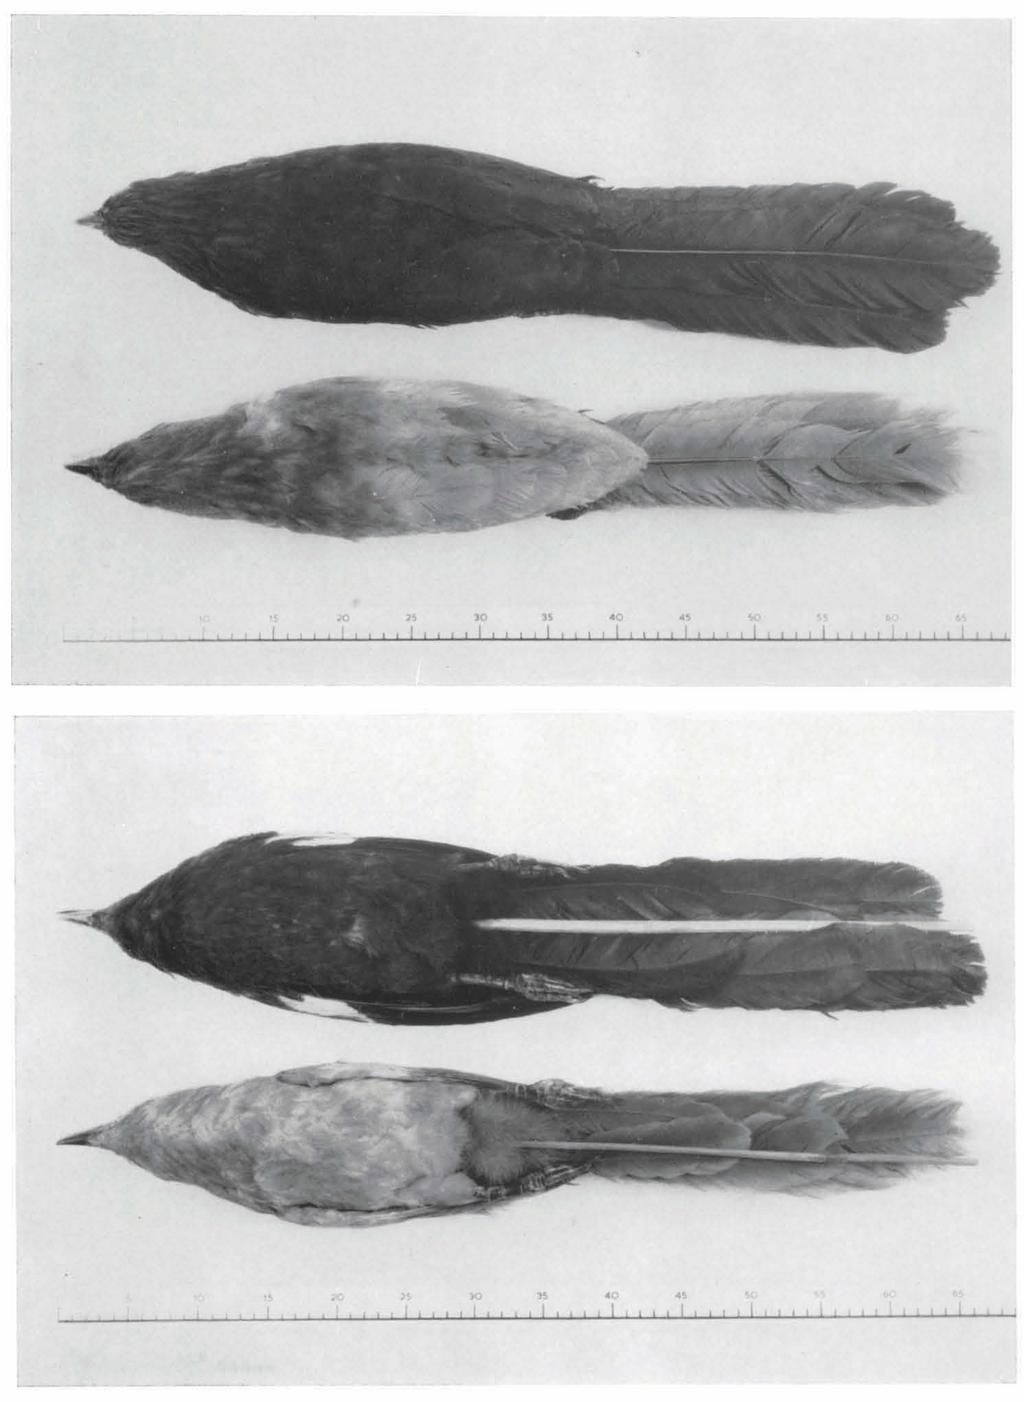 aberrant plumage resembling the " kangeangensis" plumage of Centropus sinensis kangeangensis.